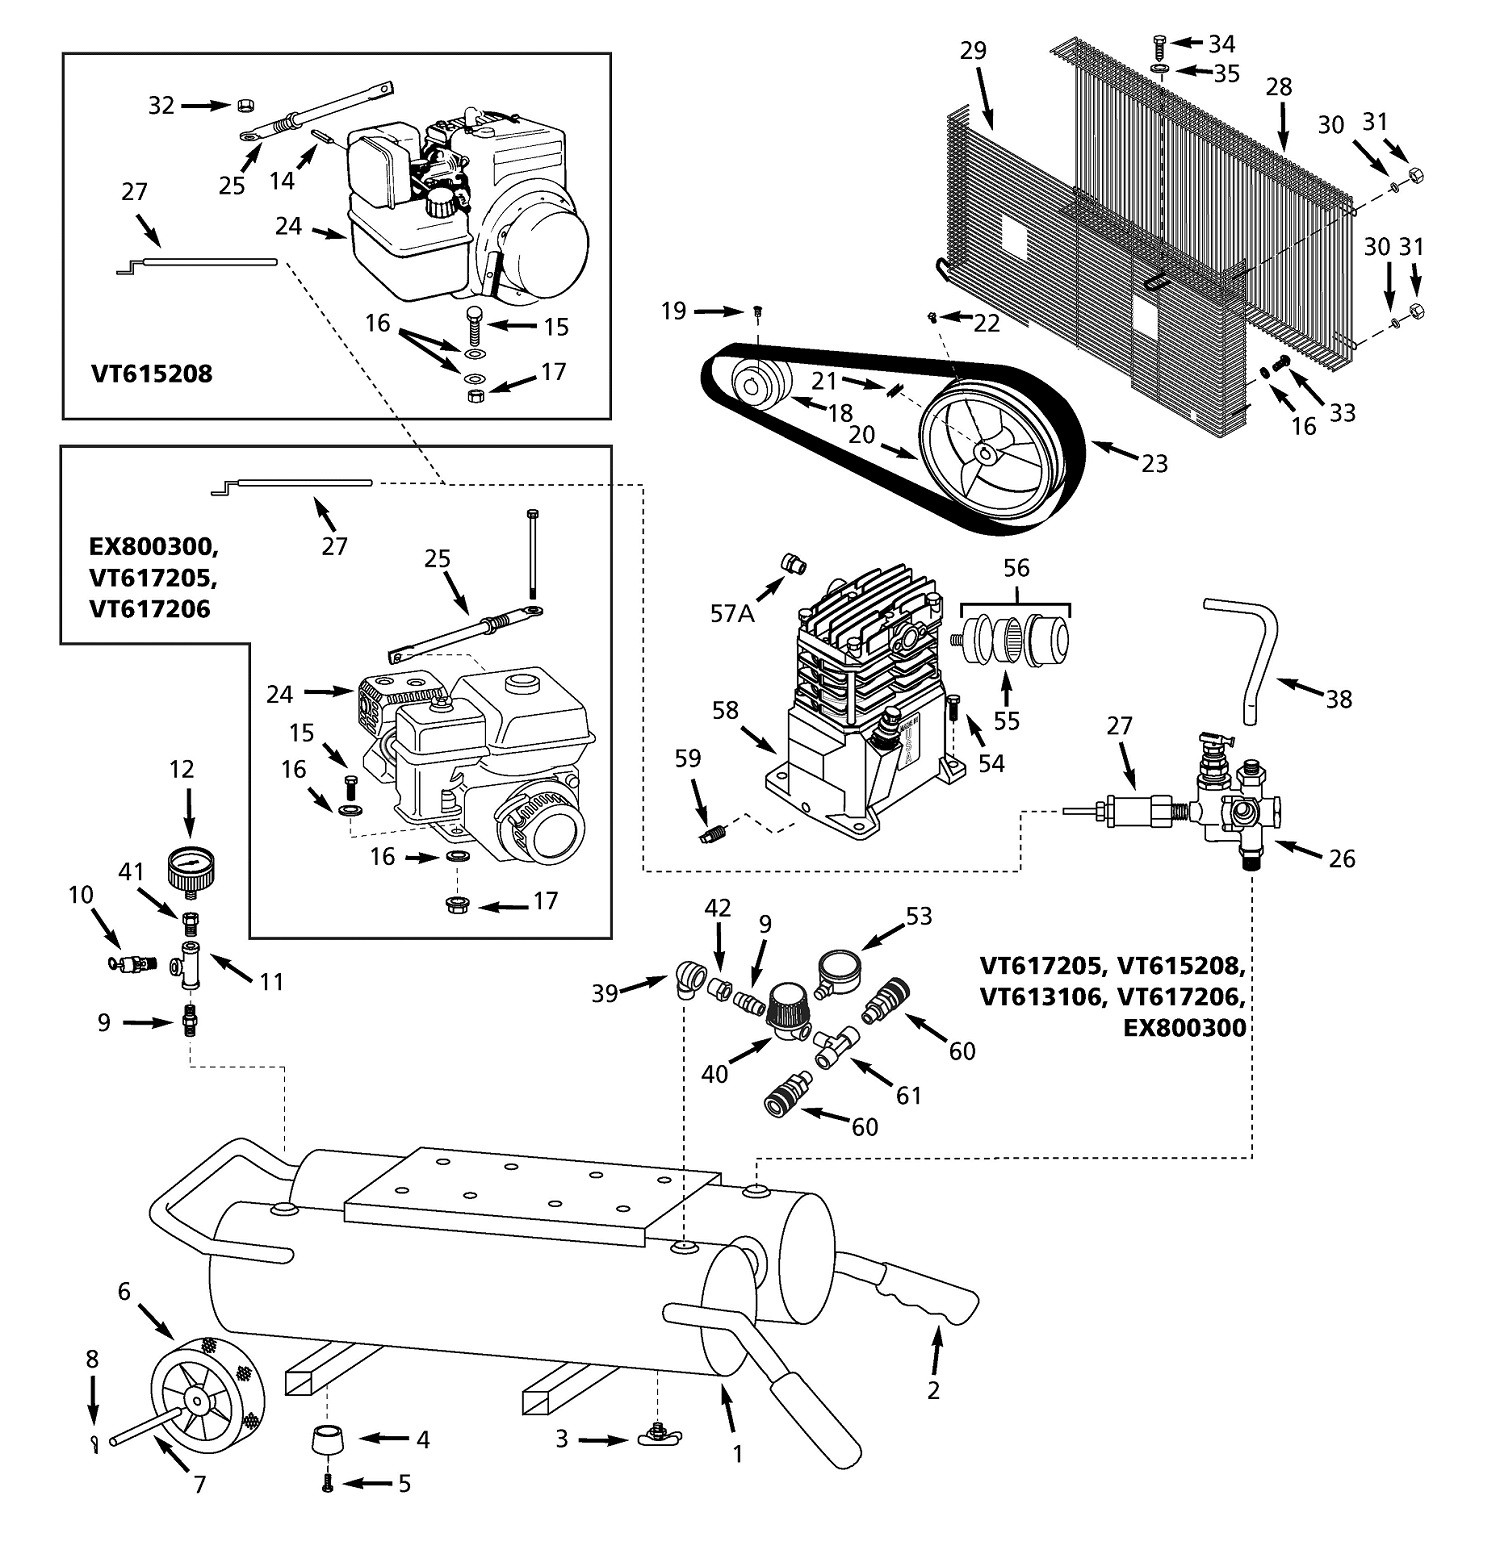 Air Compressor Parts Diagram Campbell Hausfeld Air Pressor Parts Of Air Compressor Parts Diagram